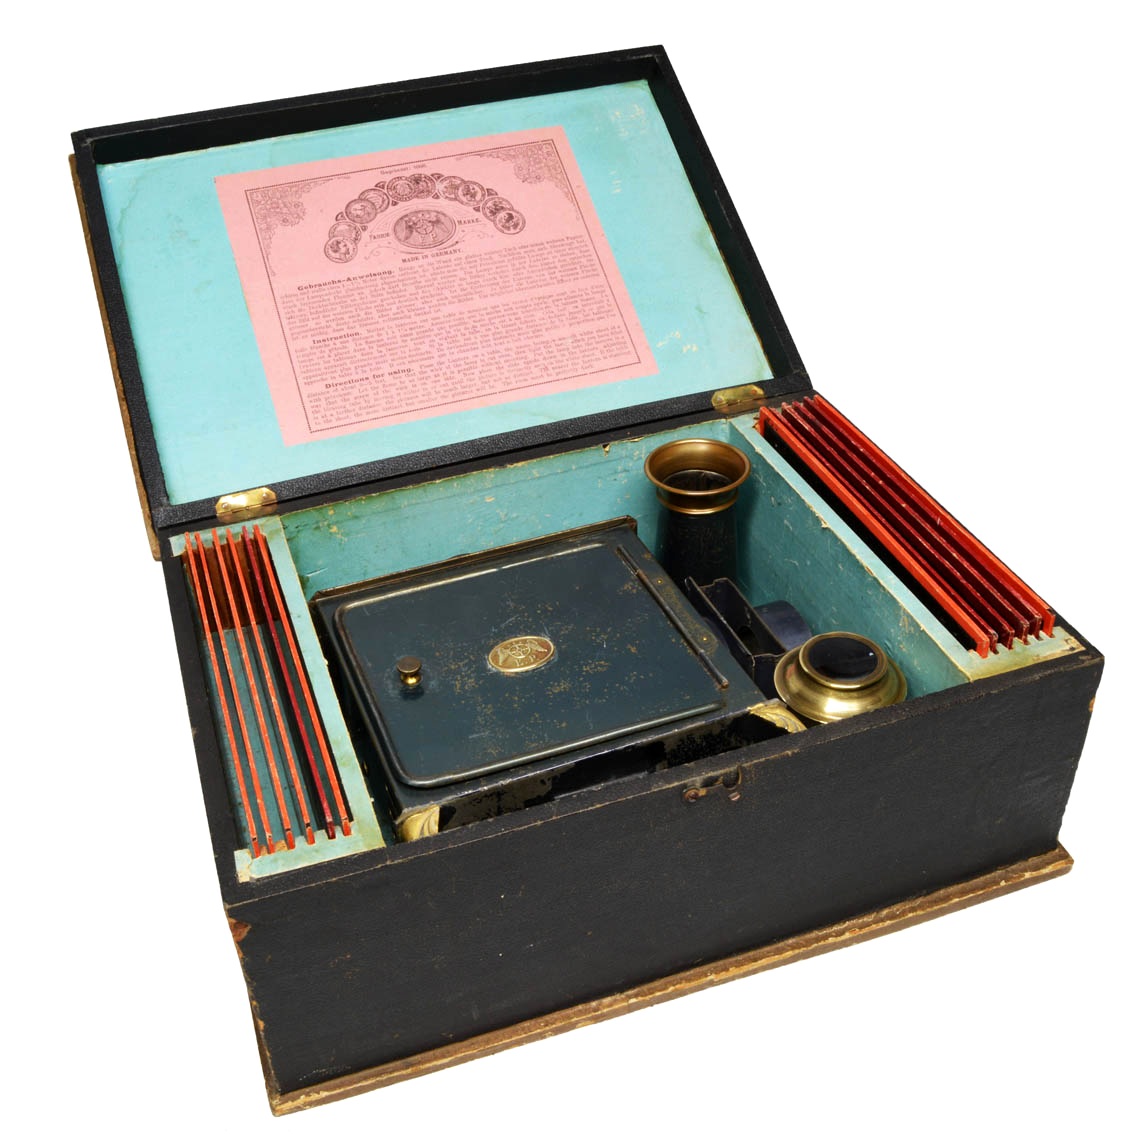 Ernst Plank child's magic lantern, in box